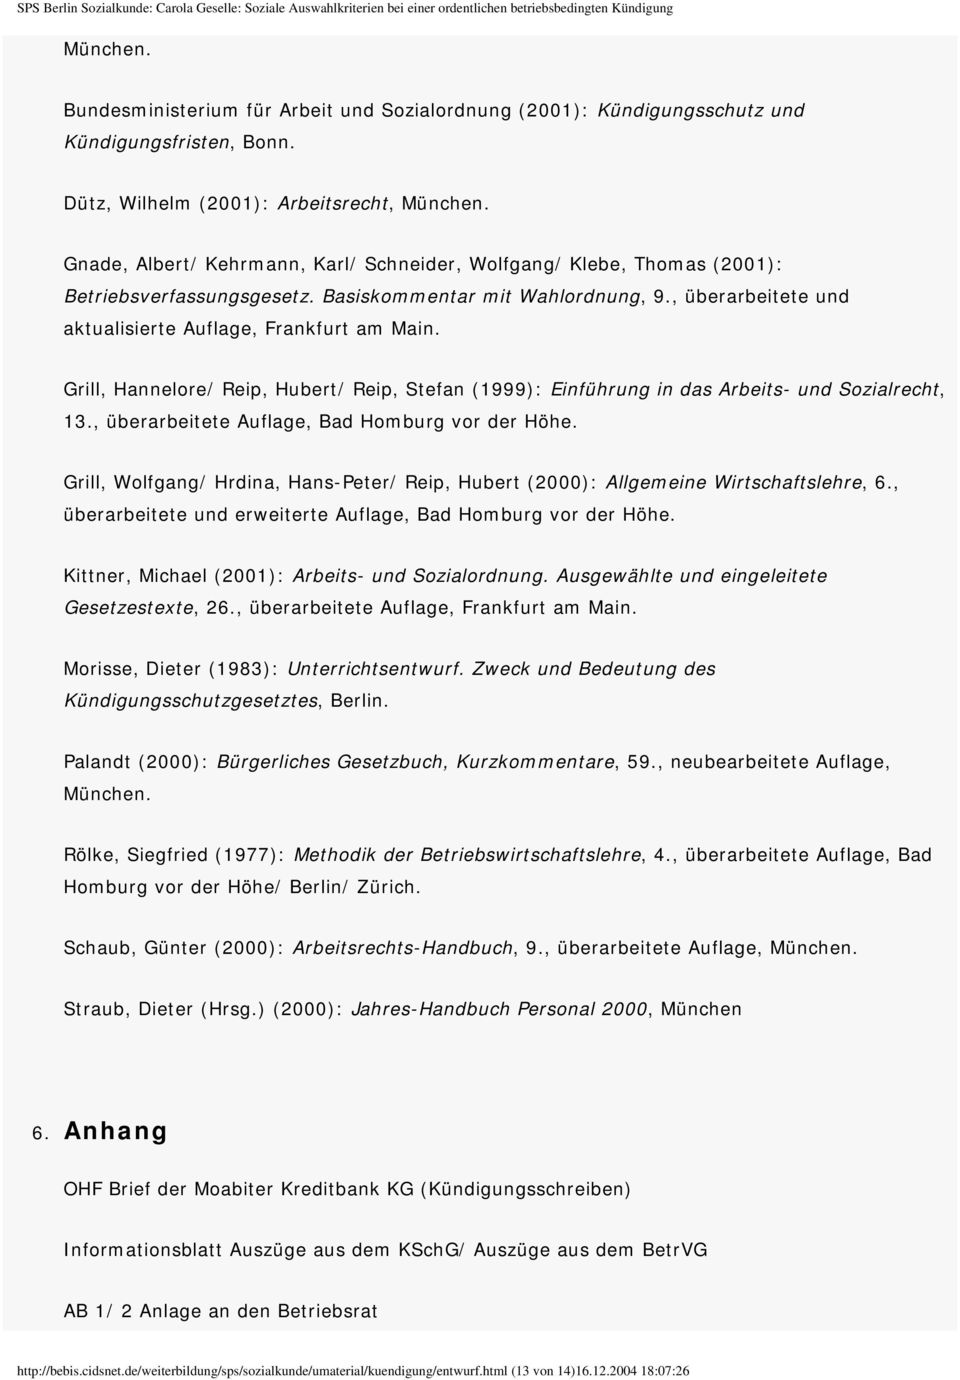 Grill, Hannelore/ Reip, Hubert/ Reip, Stefan (1999): Einführung in das Arbeits- und Sozialrecht, 13., überarbeitete Auflage, Bad Homburg vor der Höhe.